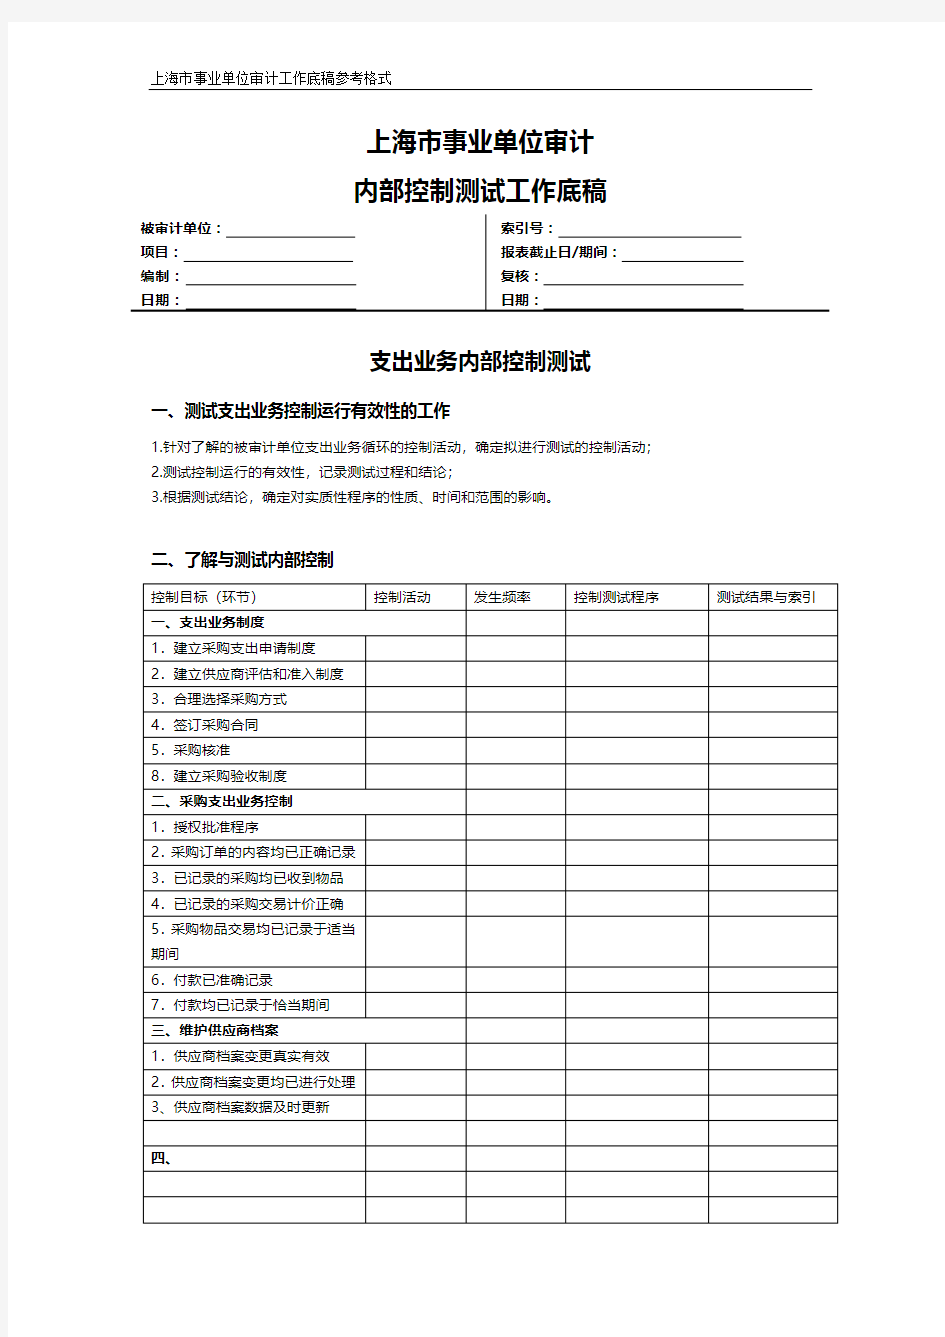 上海市事业单位审计内控测试工作底稿